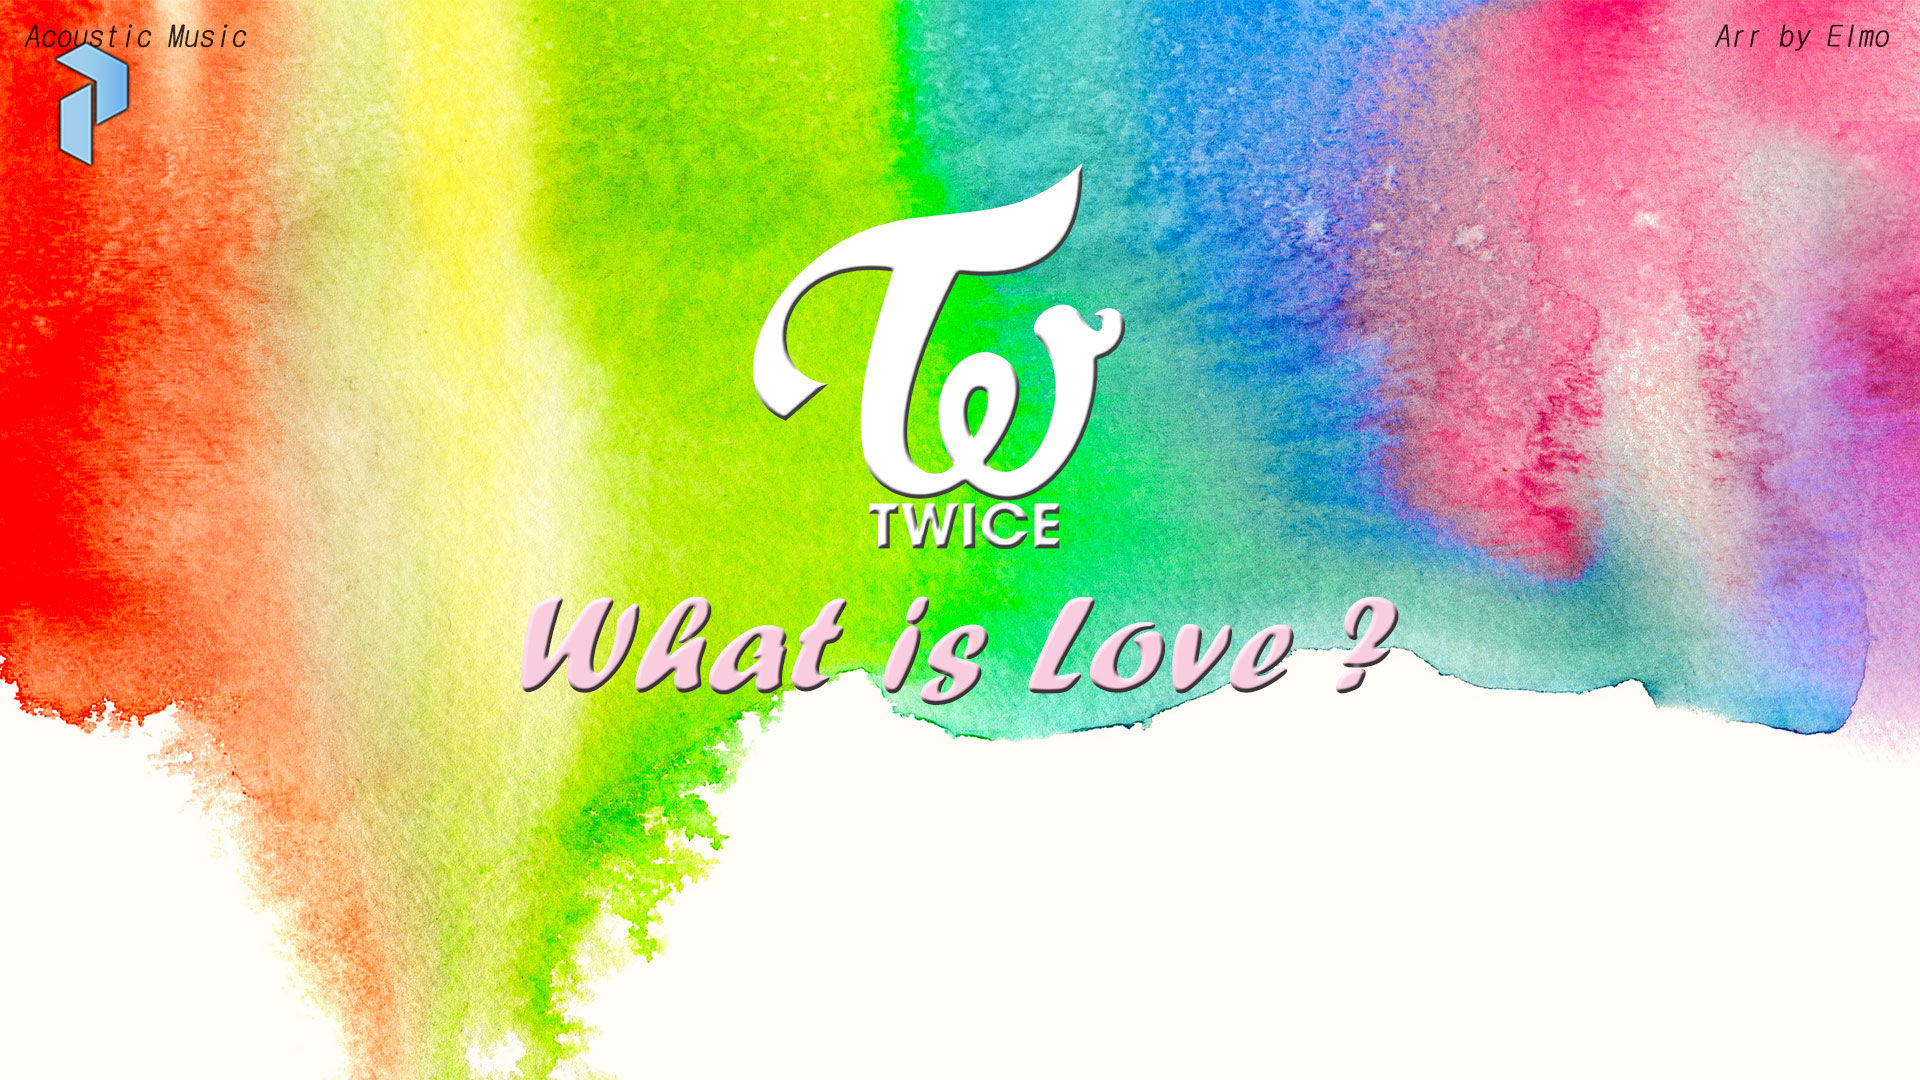 트와이스 - What is Love 피아노 커버